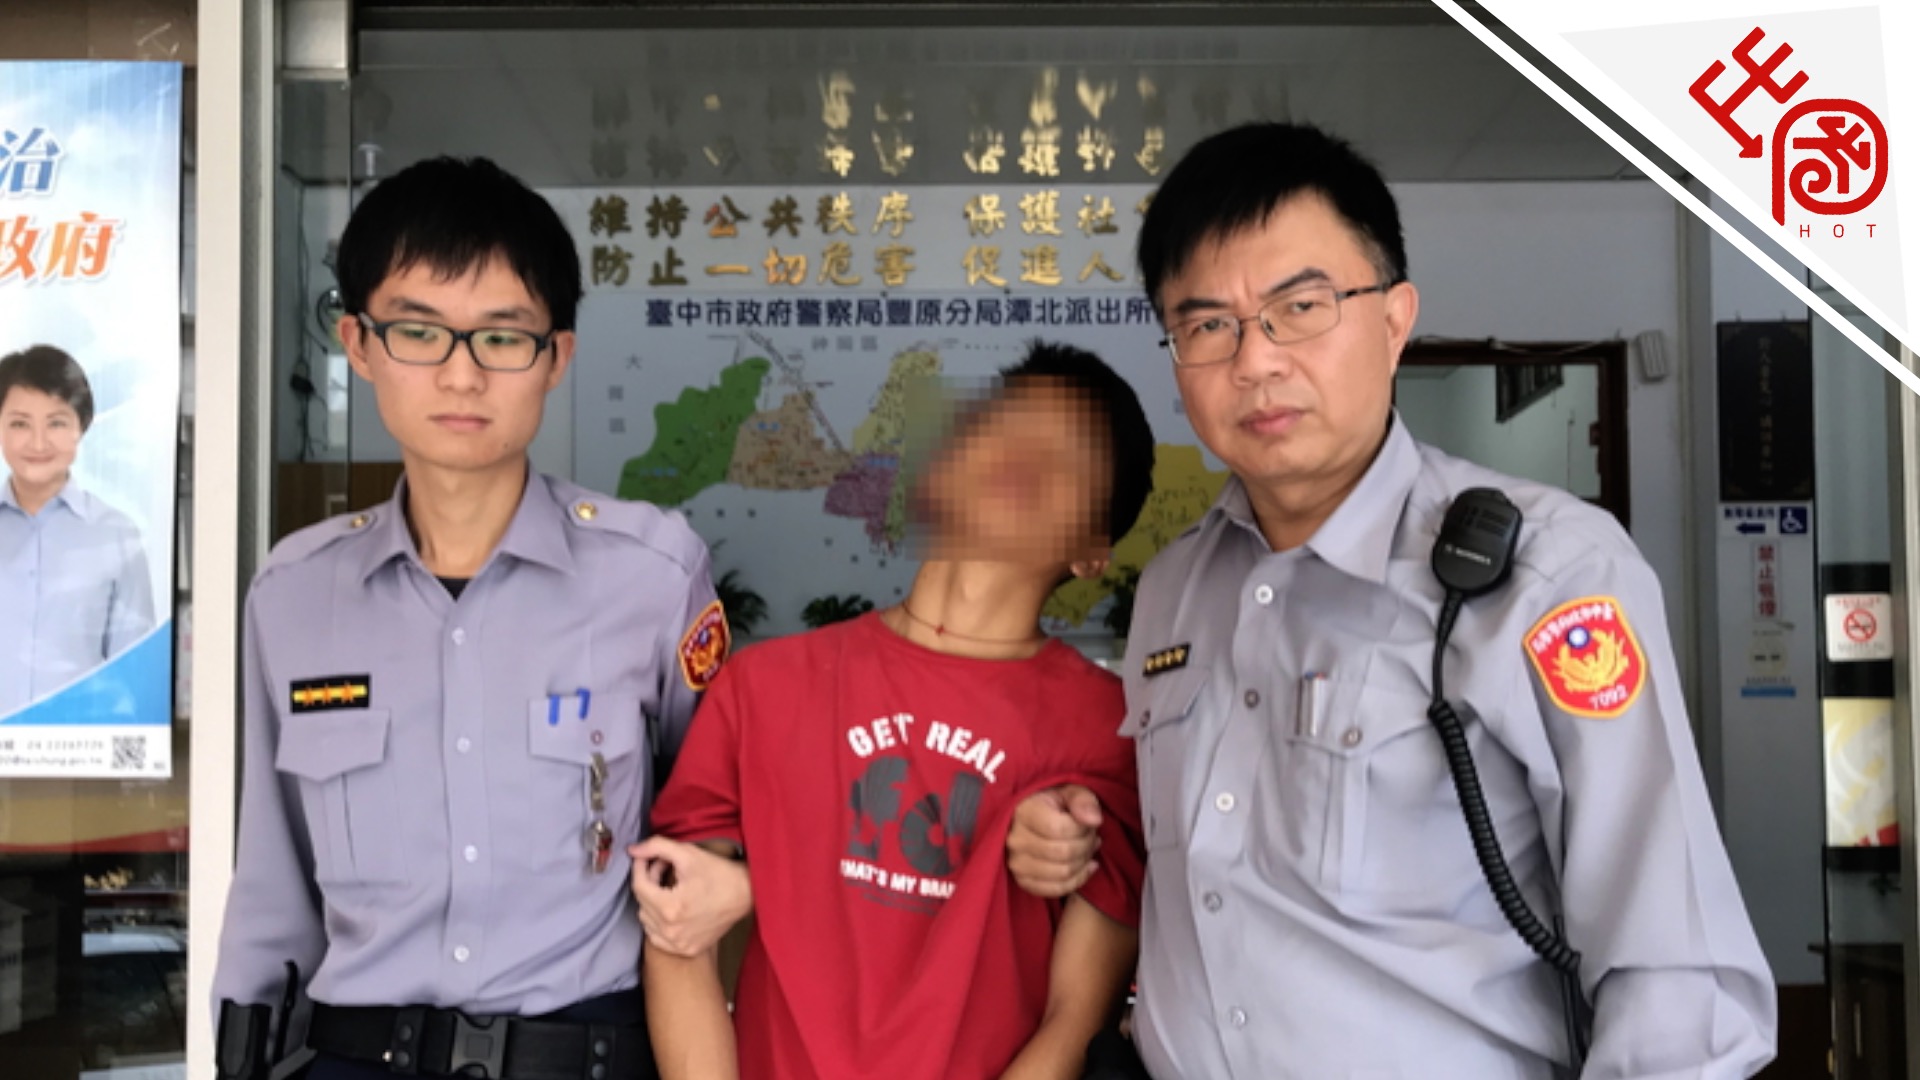 陈志朋父母主持寺庙疑遭纵火 嫌犯为19岁少年